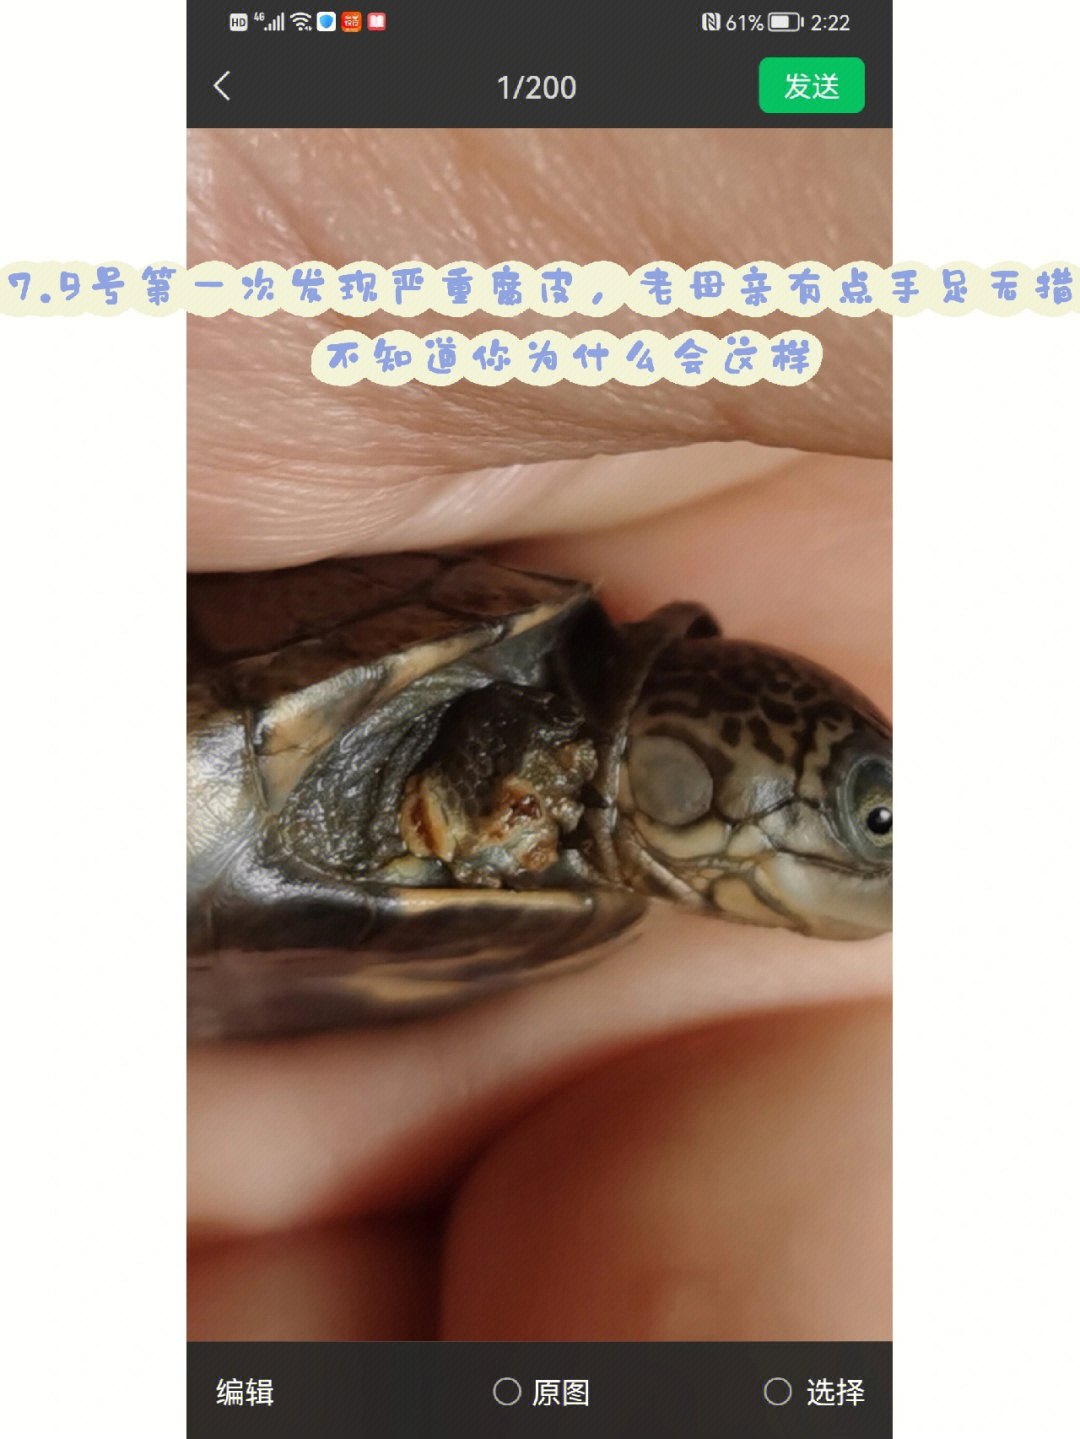 乌龟腐甲图解图片